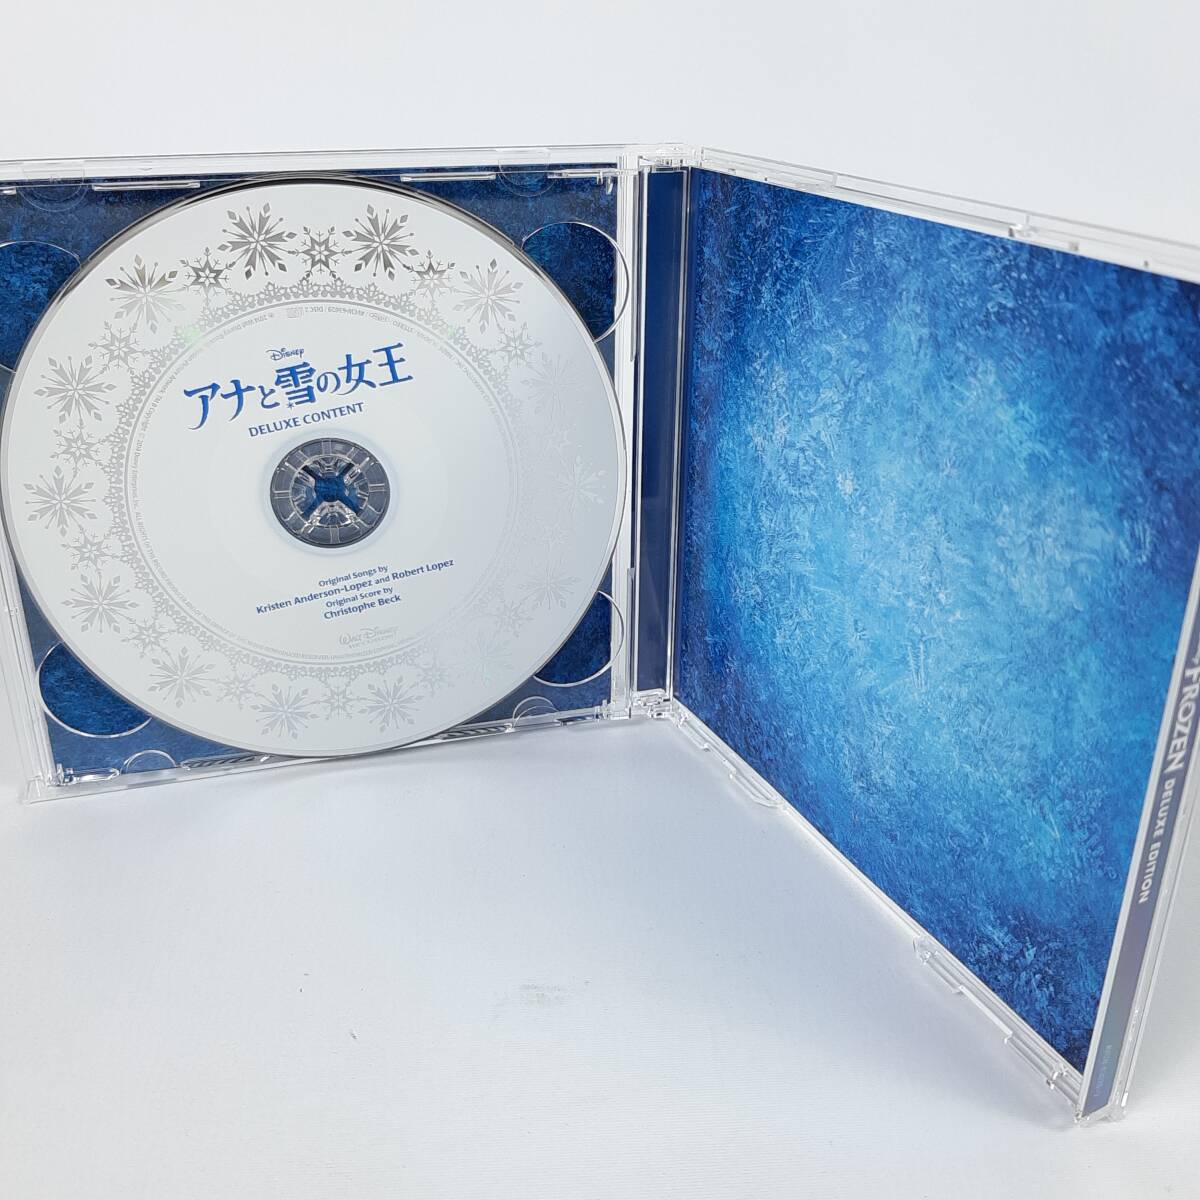 「アナと雪の女王」 オリジナル・サウンドトラックーデラックス・エディションー[初回盤スリーブケース付]_画像4